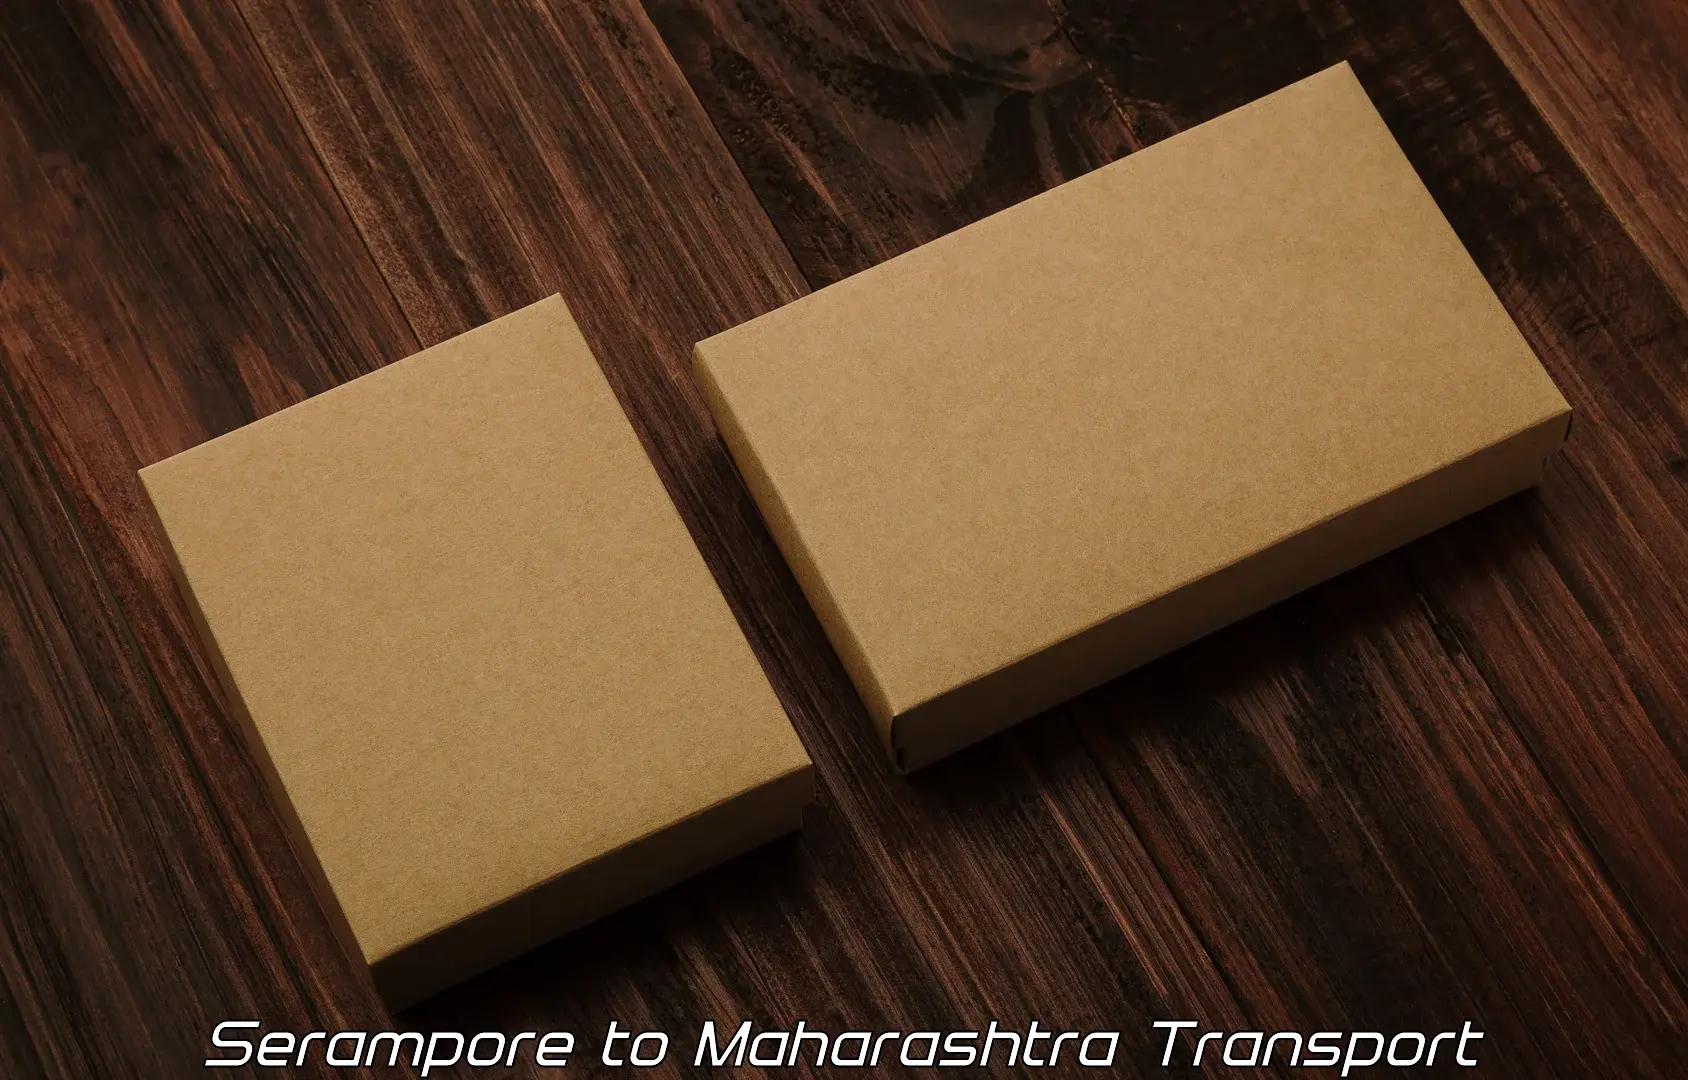 Transportation services Serampore to Tata Institute of Social Sciences Mumbai